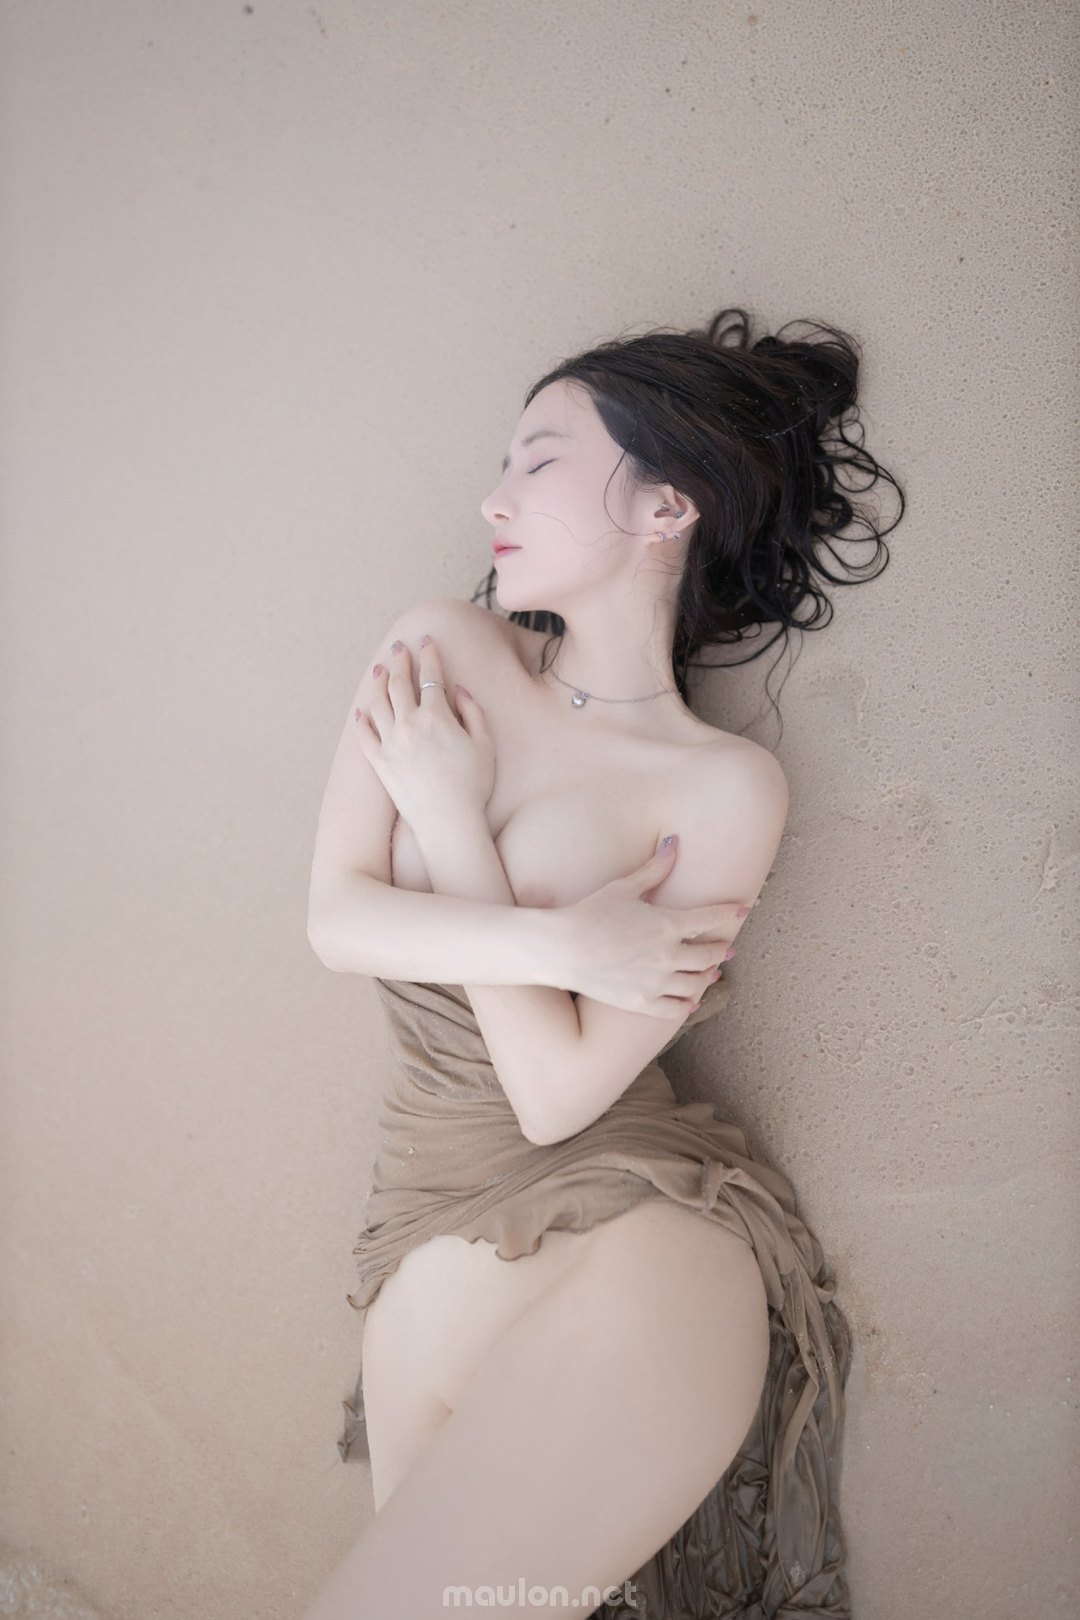 Maulon.Net - Ảnh sex gái xinh quỳ trên bãi cát